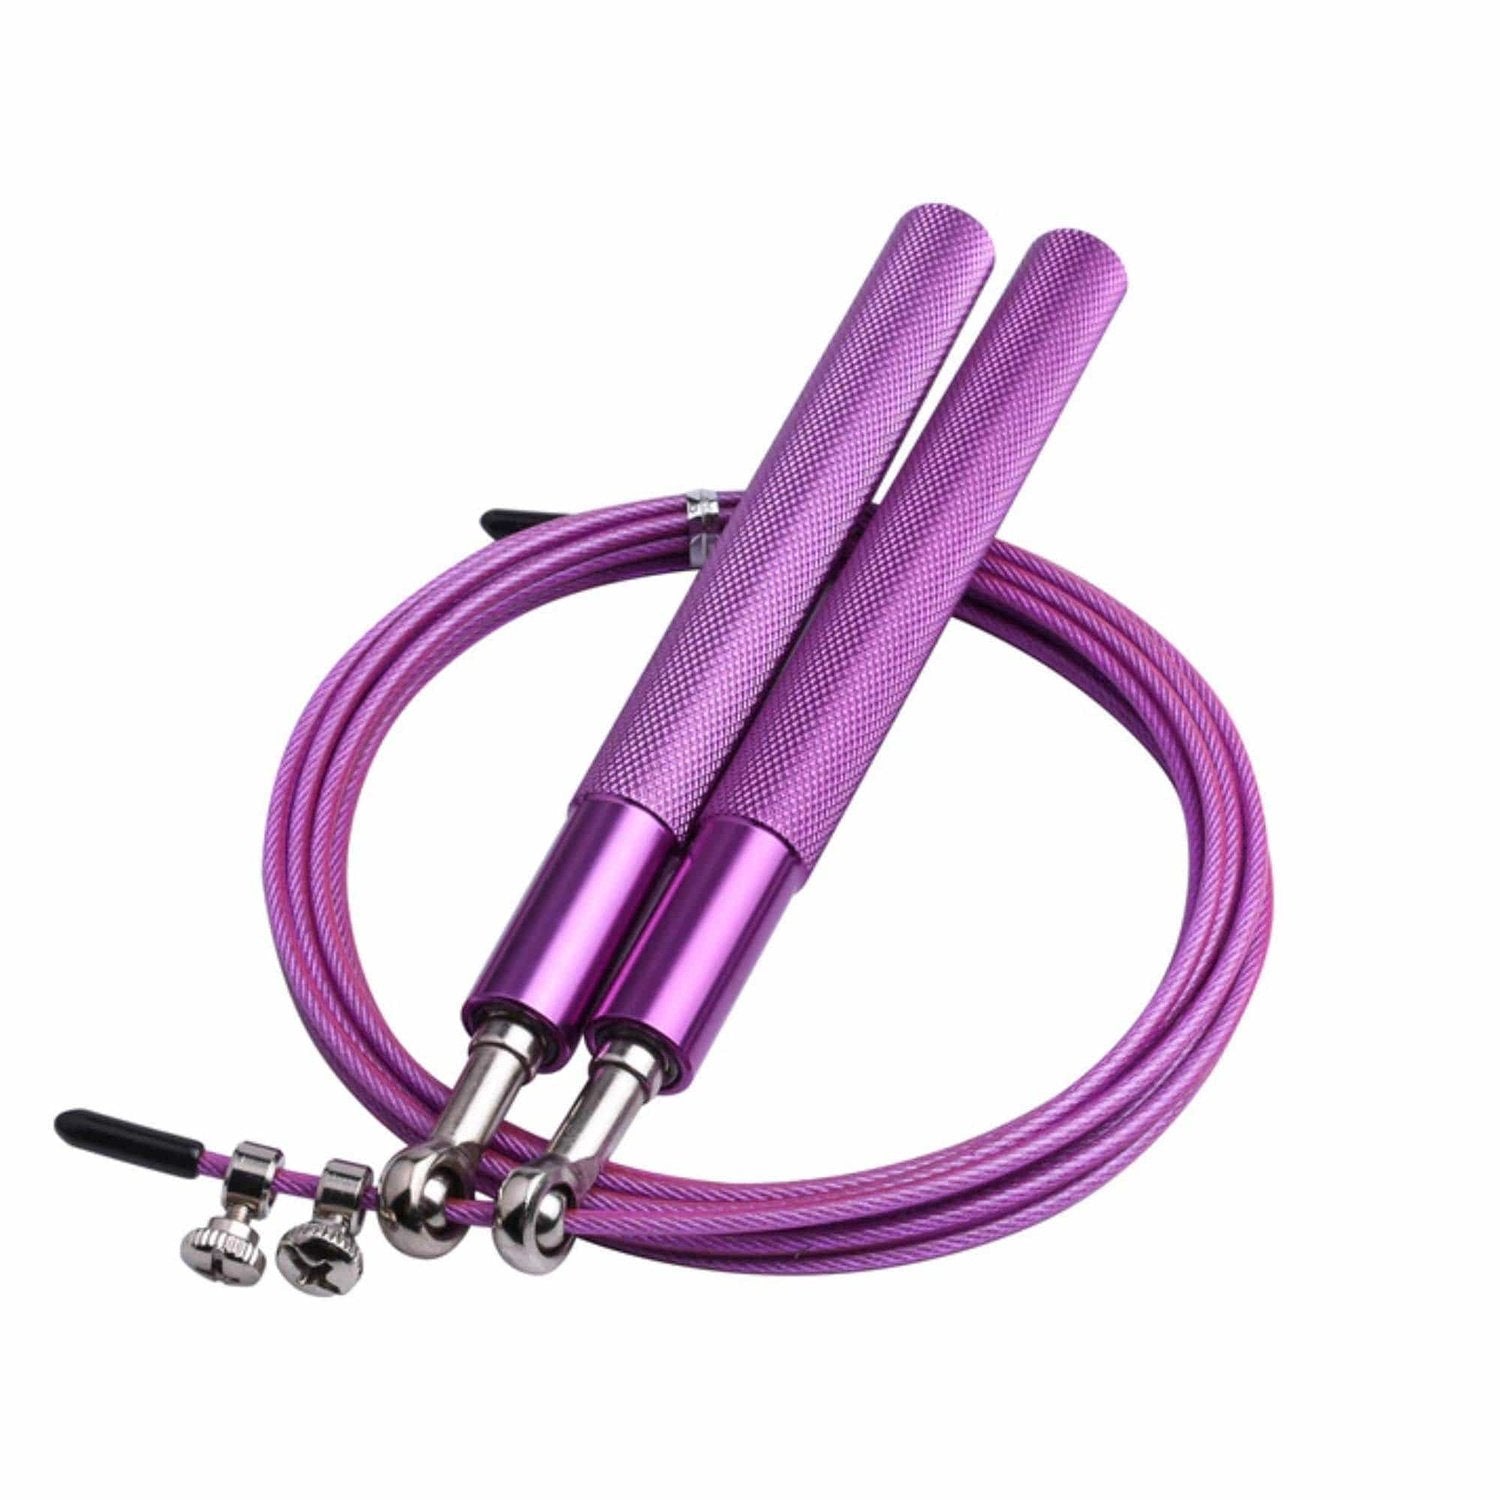 HighPowered Light Aluminium Jump Rope (Einsteigerspringseil) Violett kaufen bei HighPowered.ch